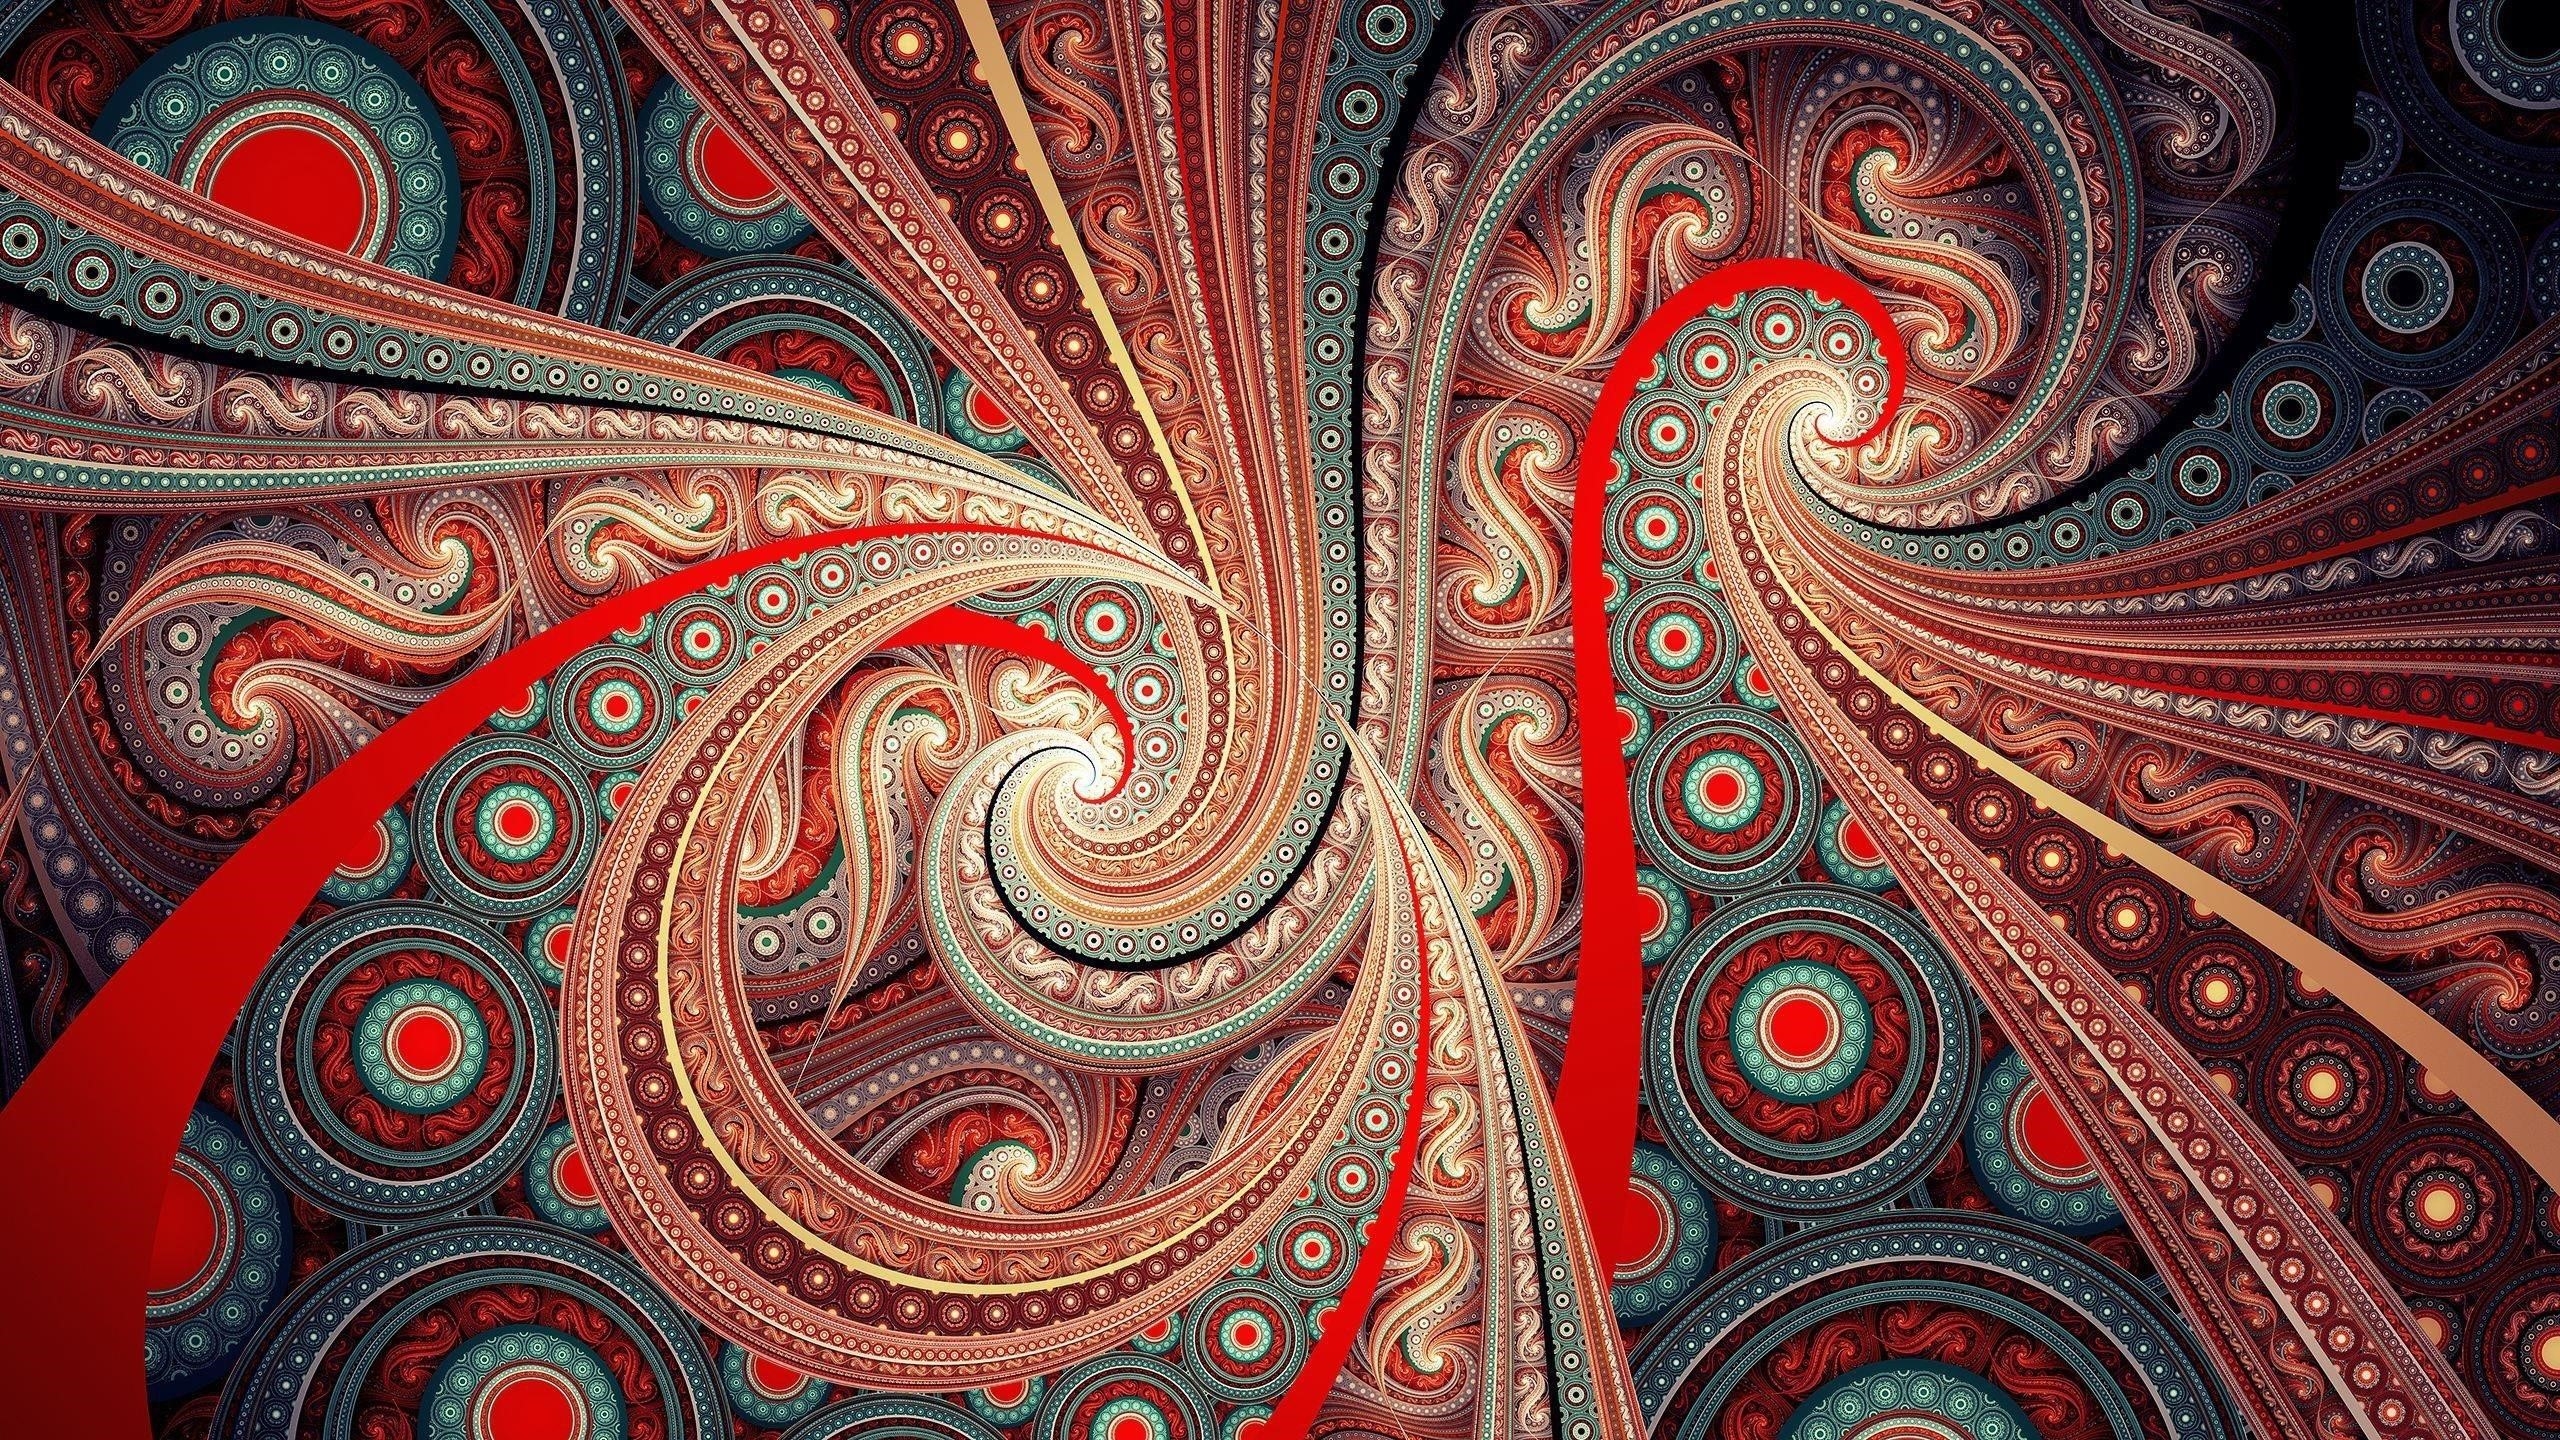 Beautiful patterns